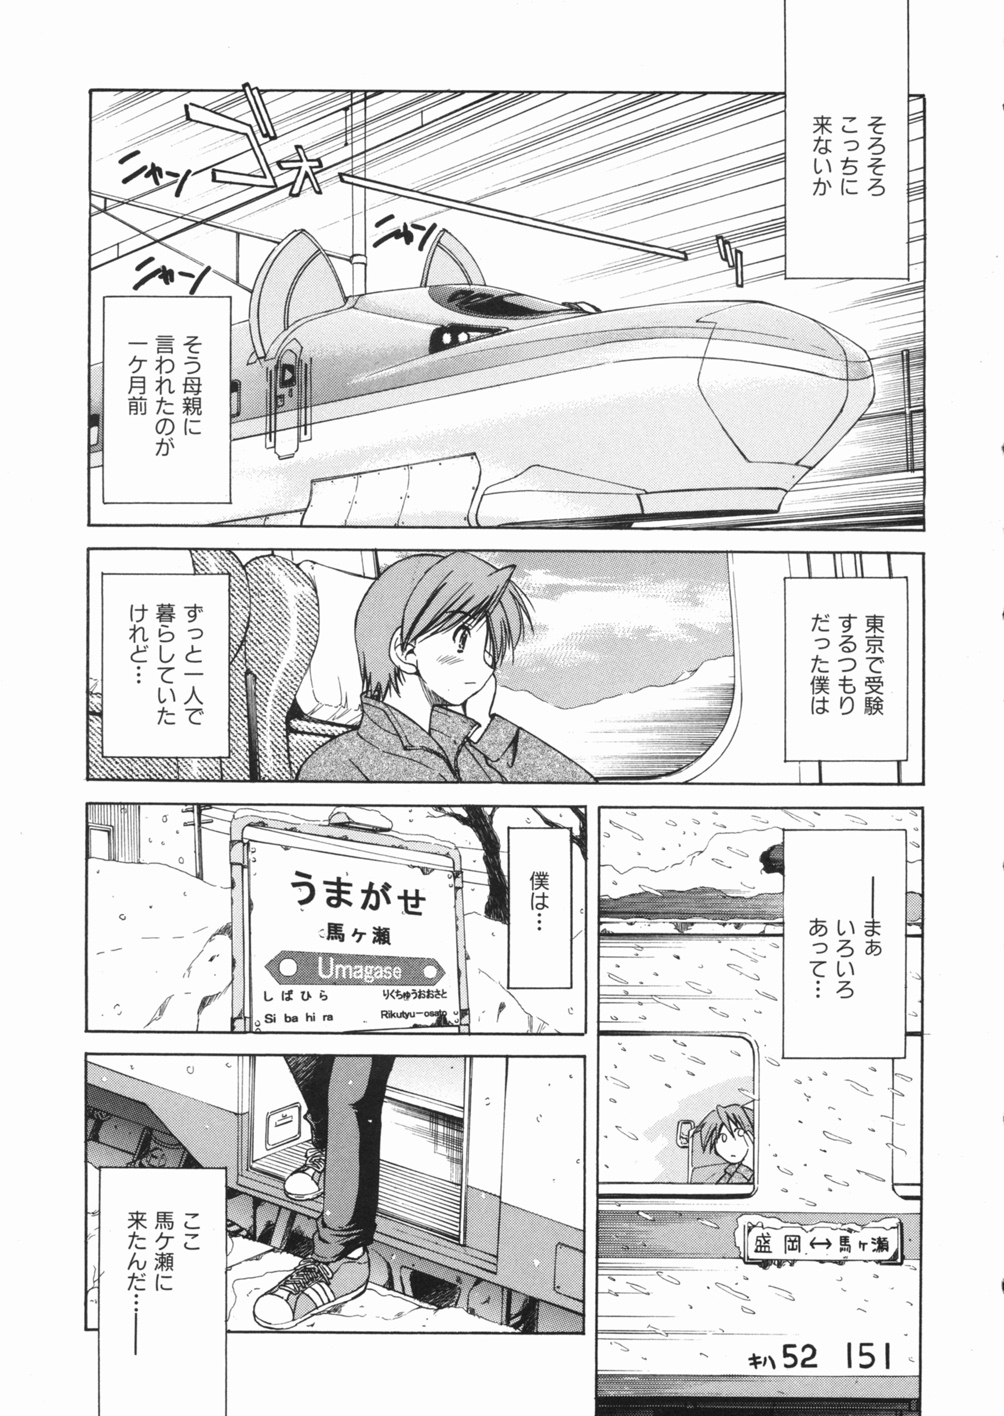 [Inoue Yoshihisa] Sunao page 7 full